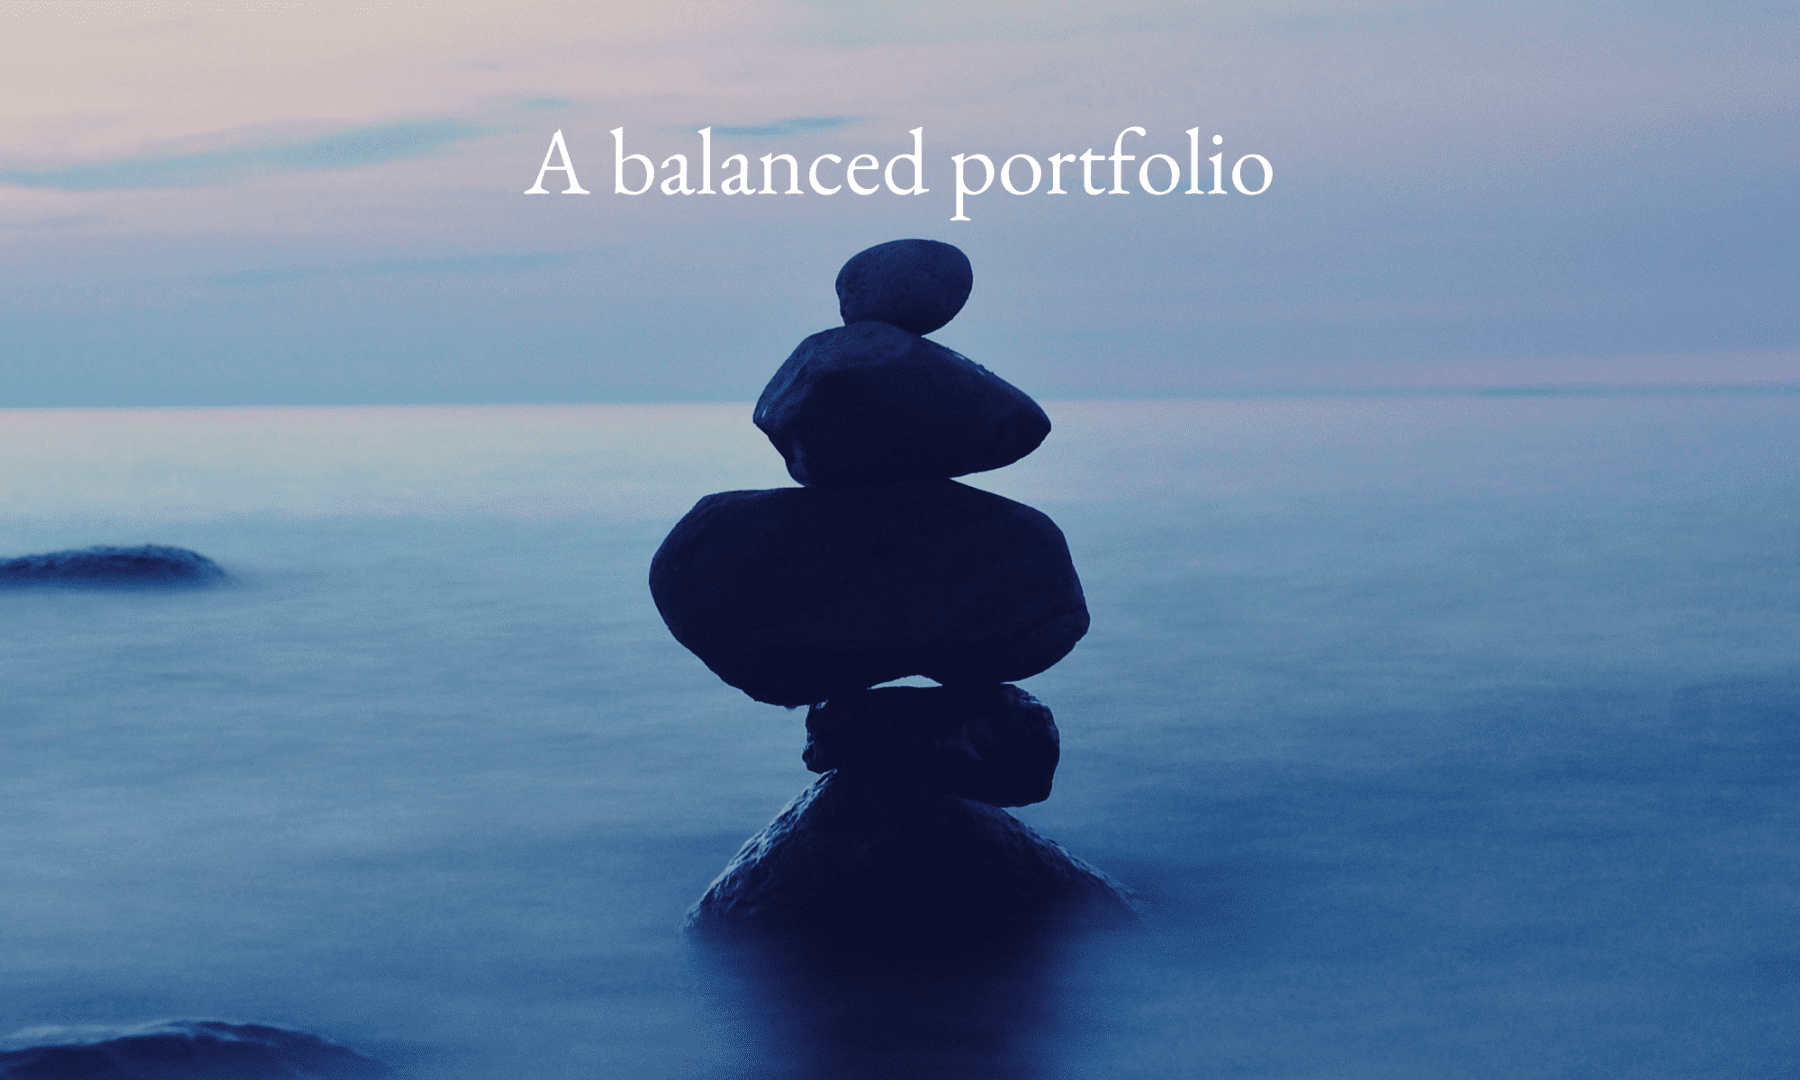 A balanced portfolio